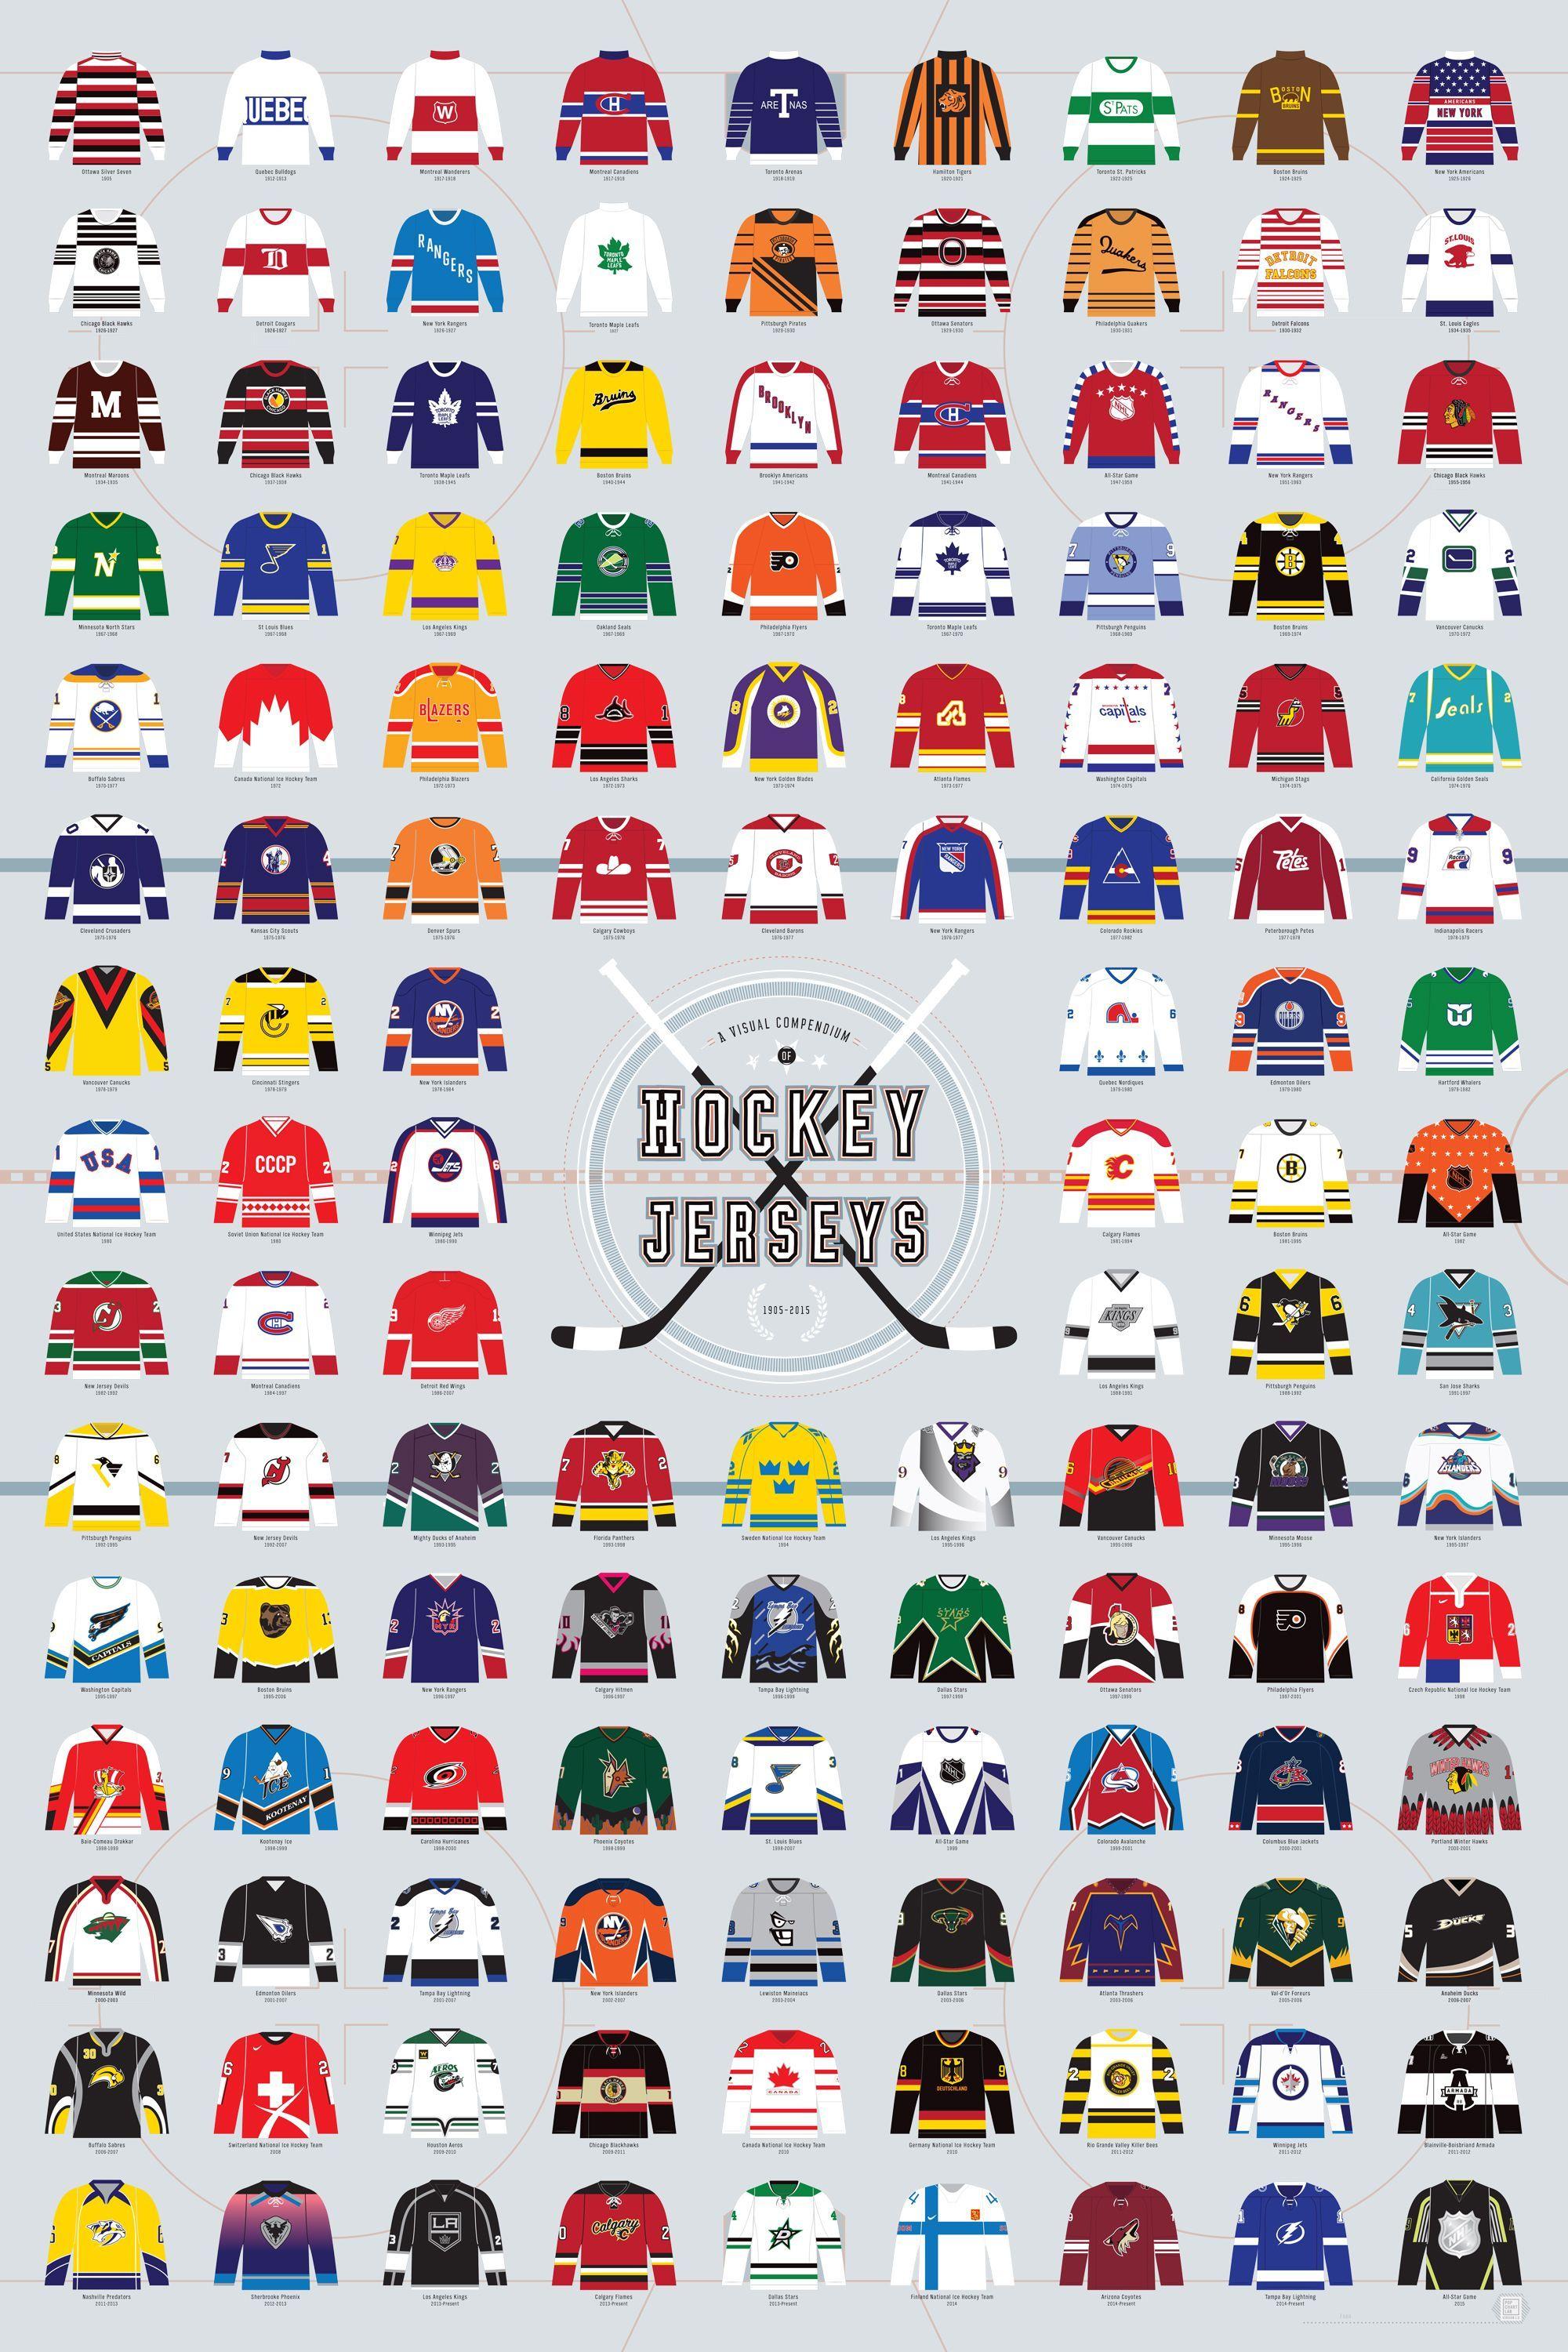 Custom Hockey Logo - A Visual Compendium of Hockey Jerseys. Sports and Sneakers. Hockey